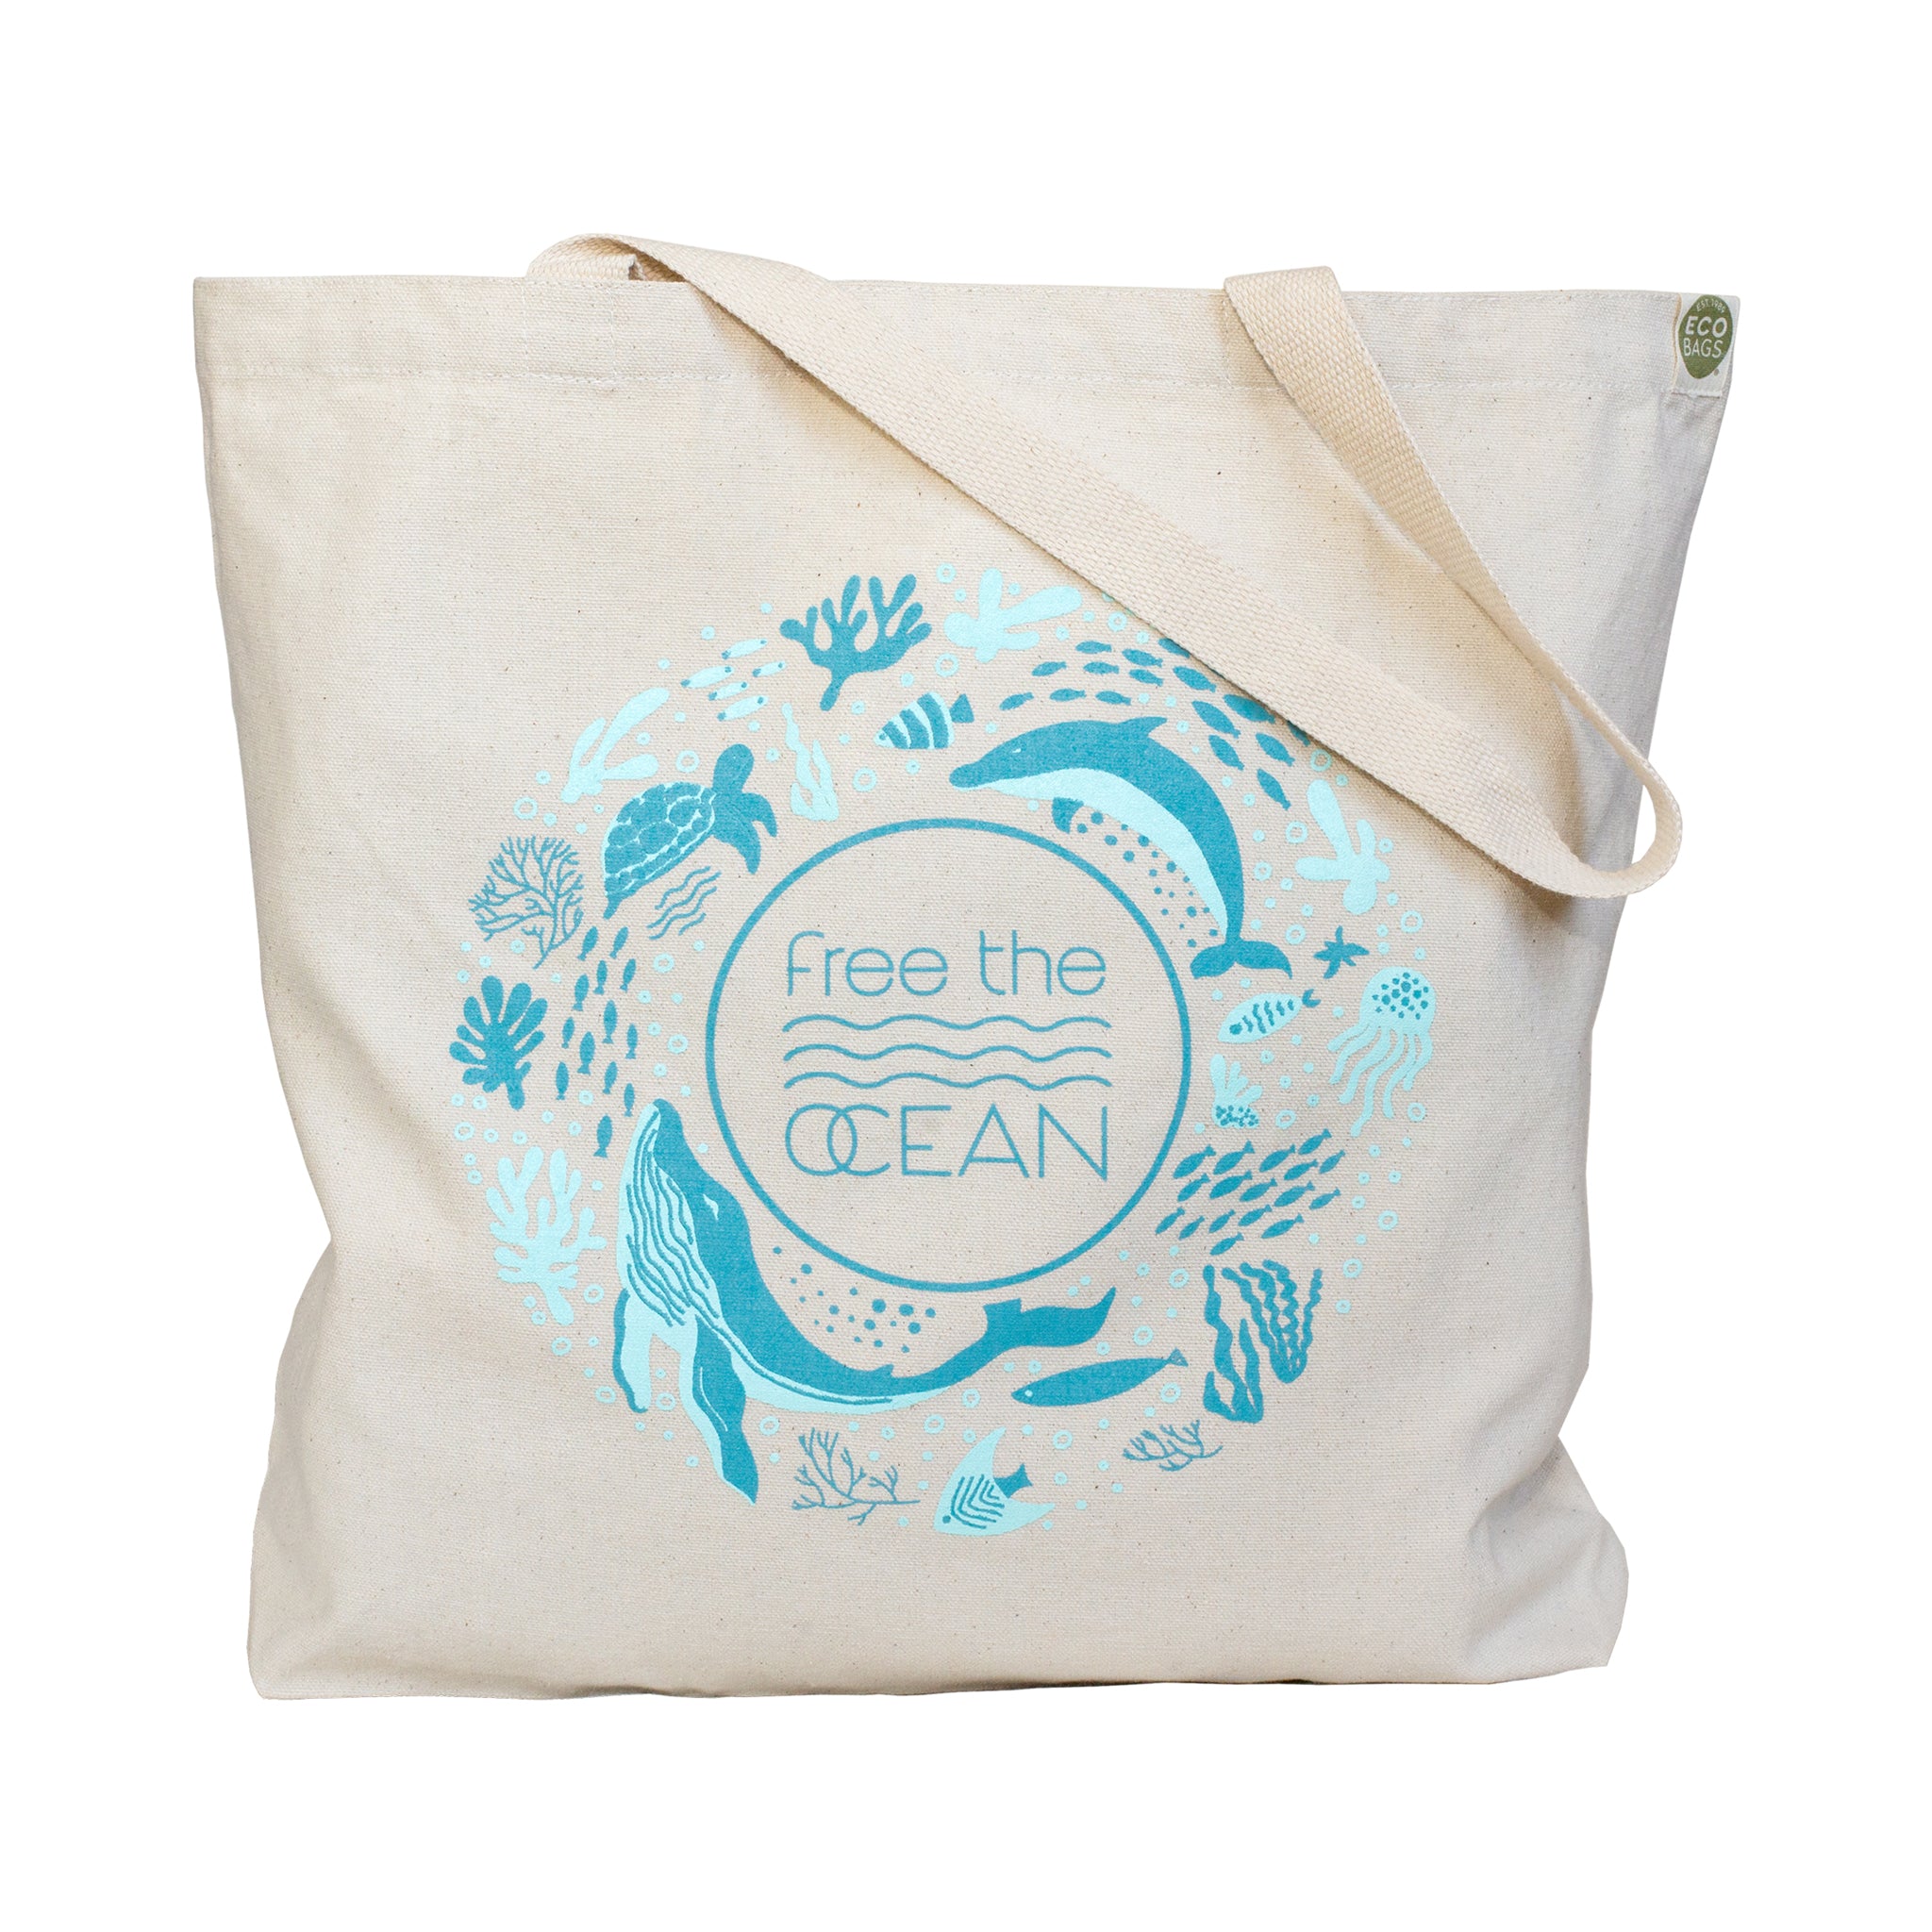  Taiwan Fisherman Net Bag Eco Bag Mesh Bag Size 1